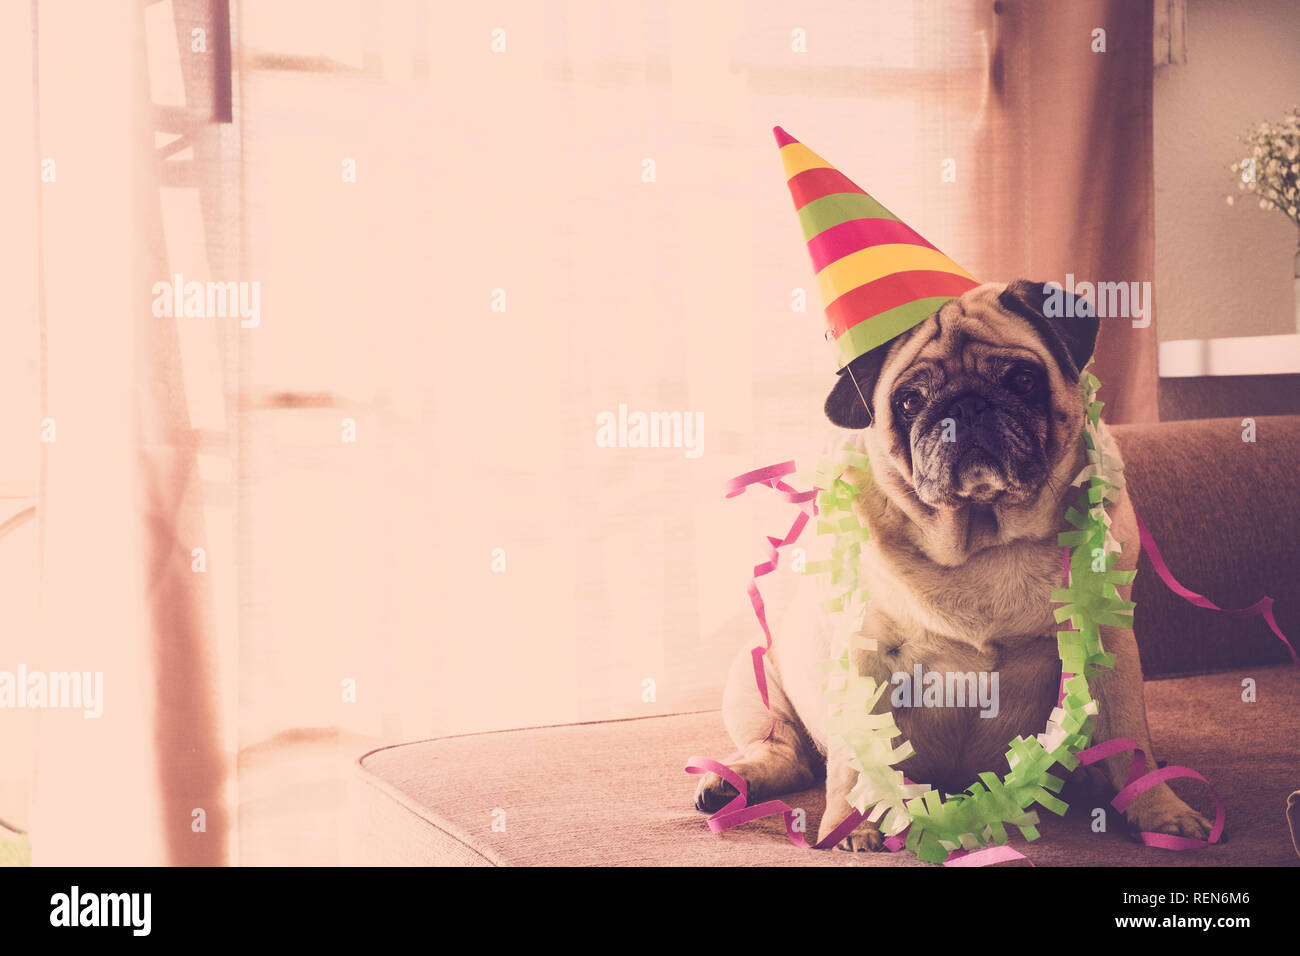 Il carnevale divertente concetto celenration compleanno Capodanno Natale con crazy pug cane con colorato stile evento hat Foto Stock